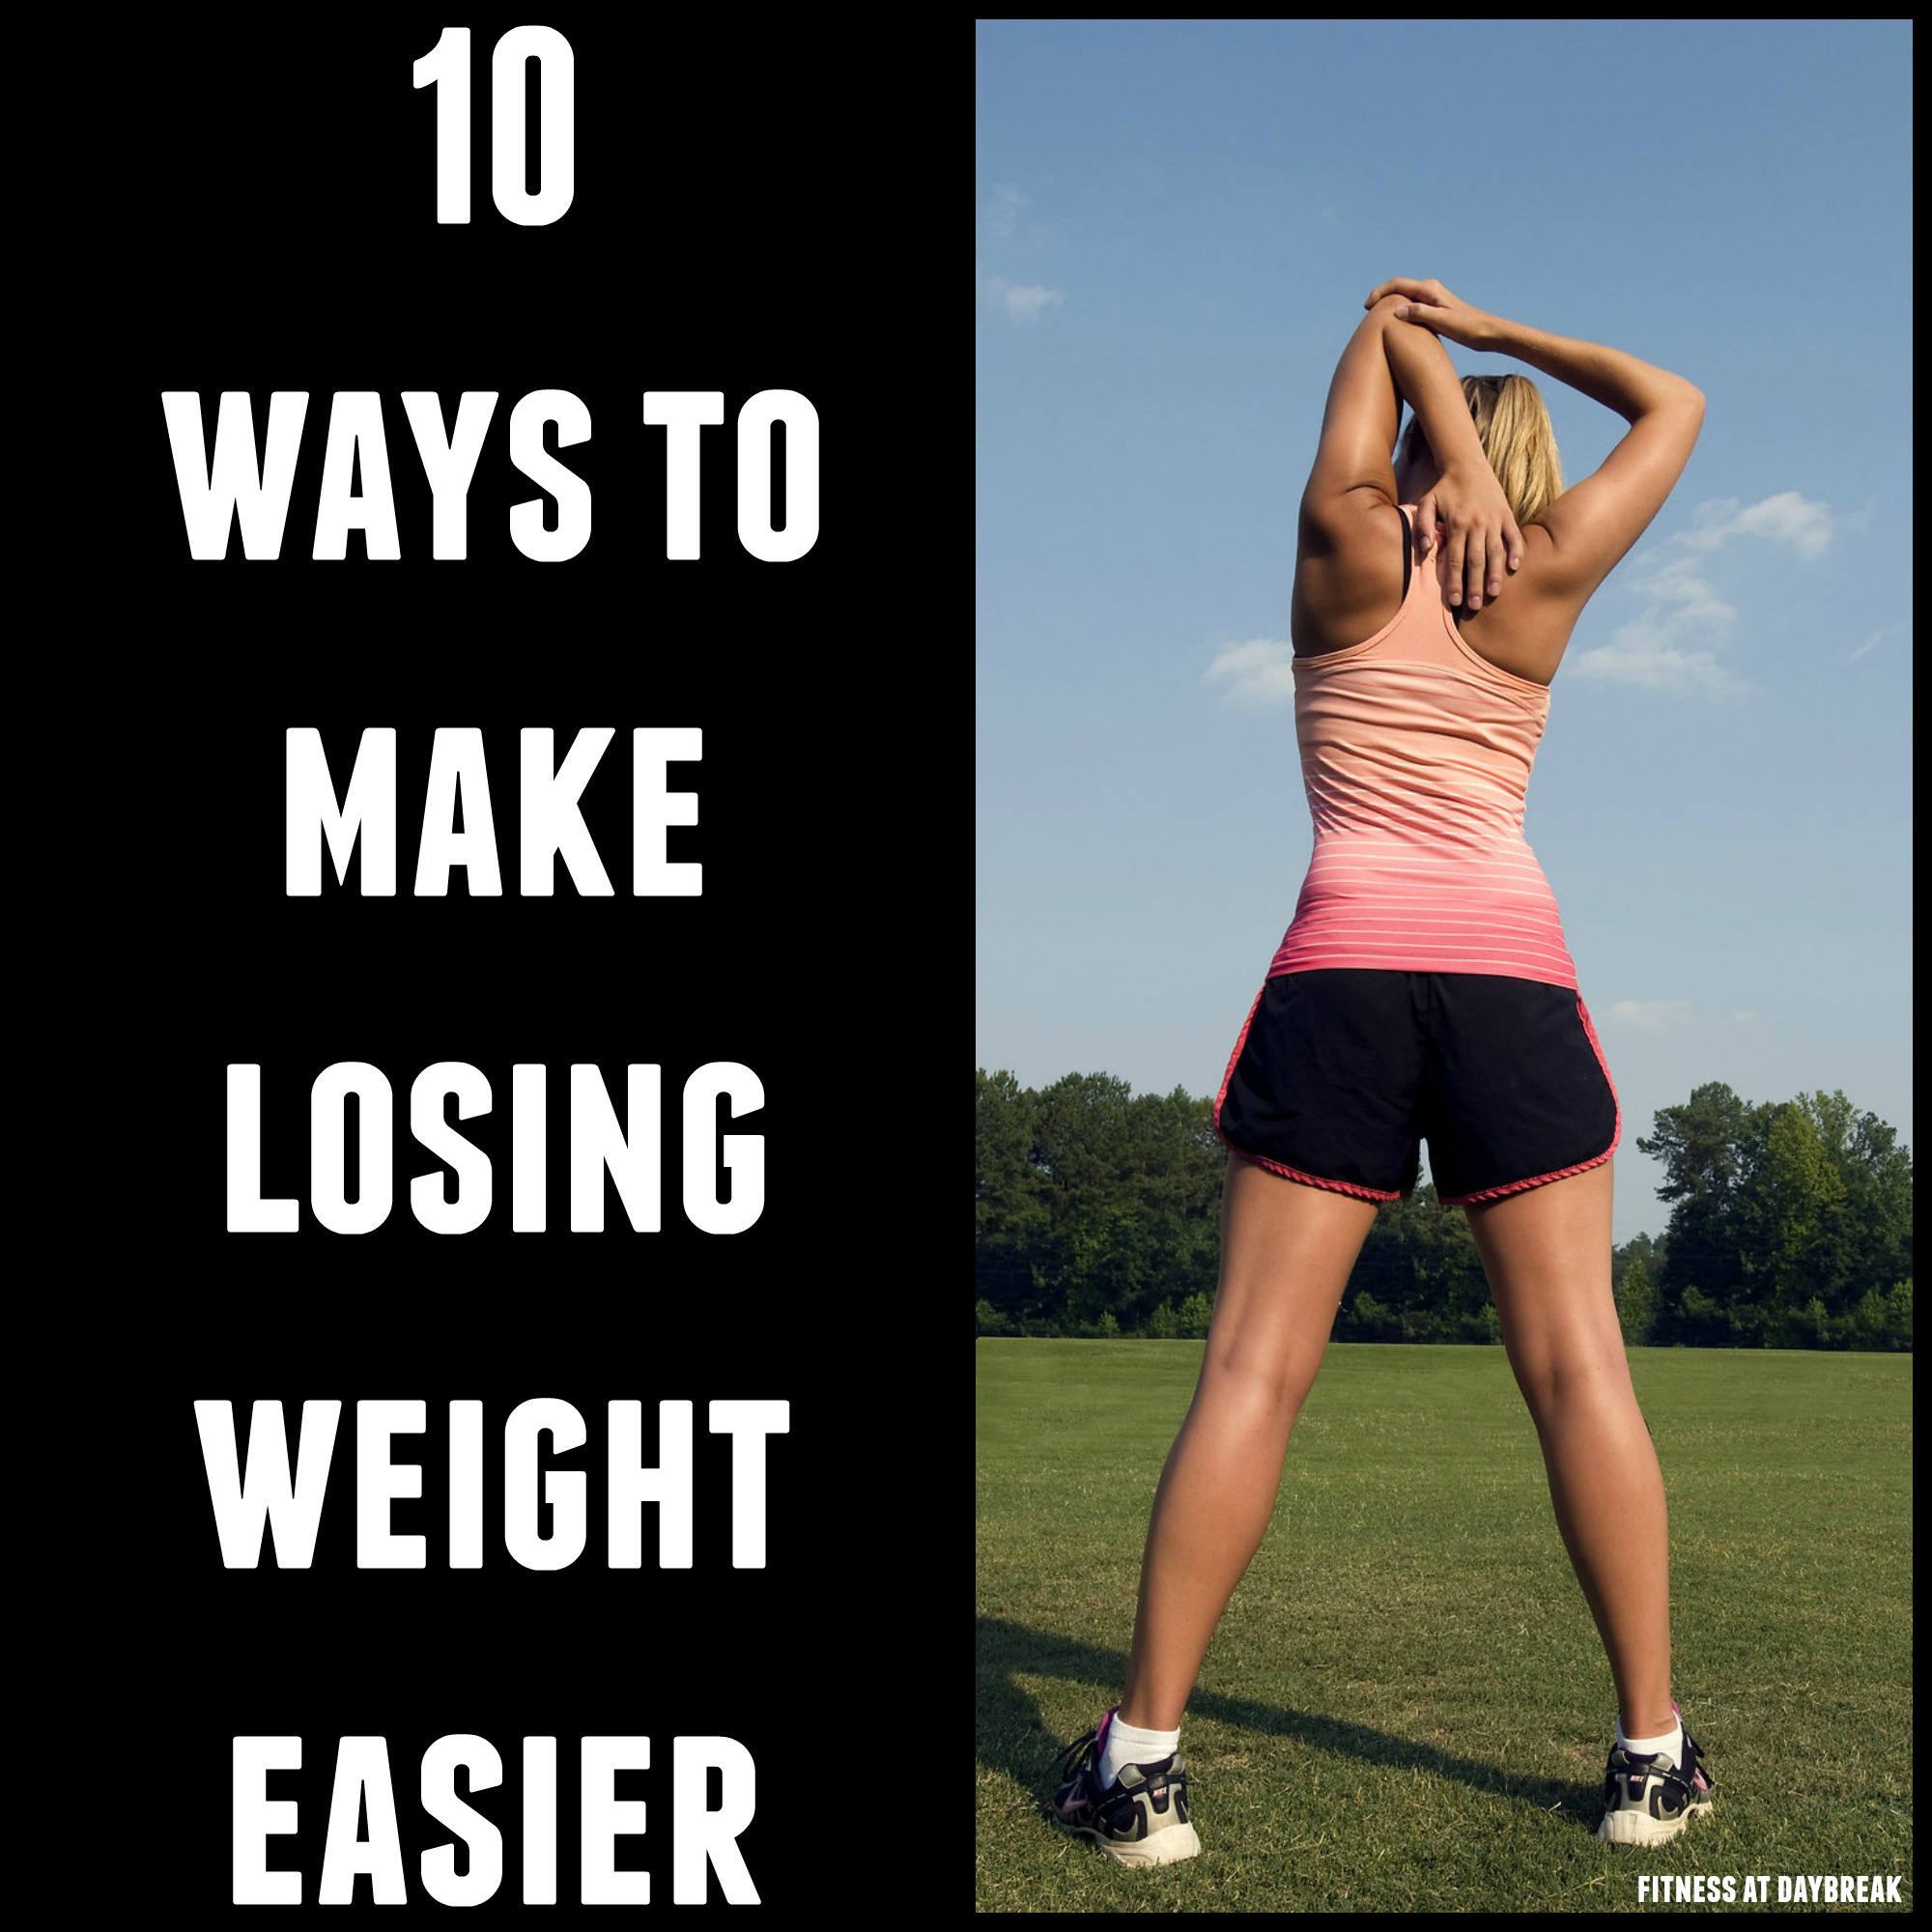 10 Ways to make losing weight easier